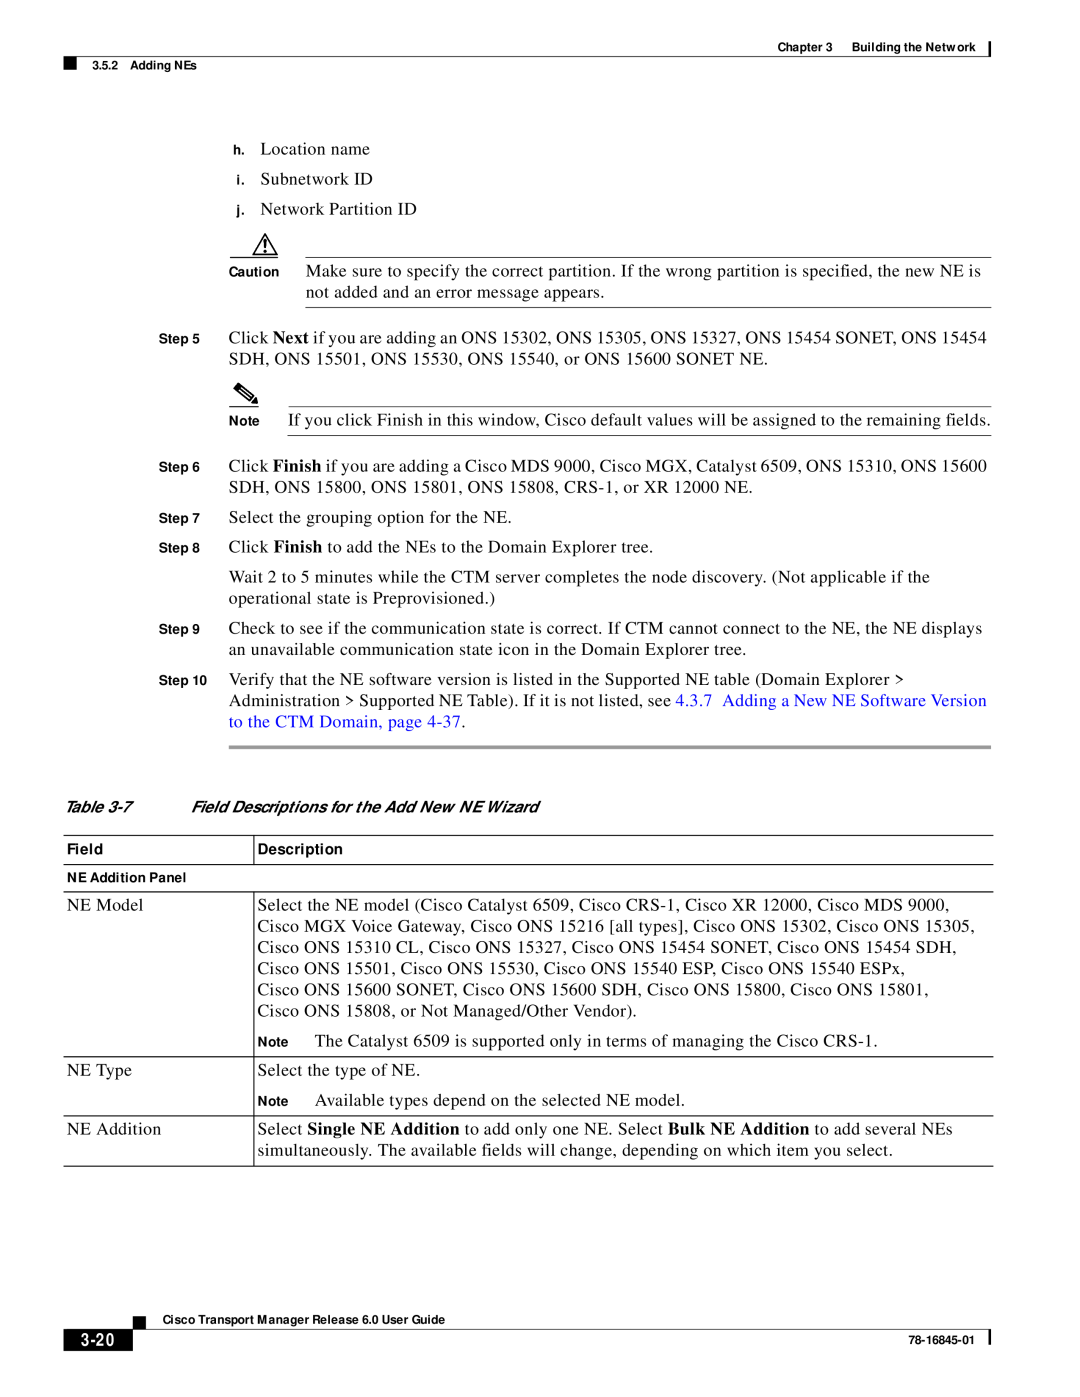 Cisco Systems 78-16845-01 manual 3-20, 7 Field Descriptions for the Add New NE Wizard, NE Addition Panel 